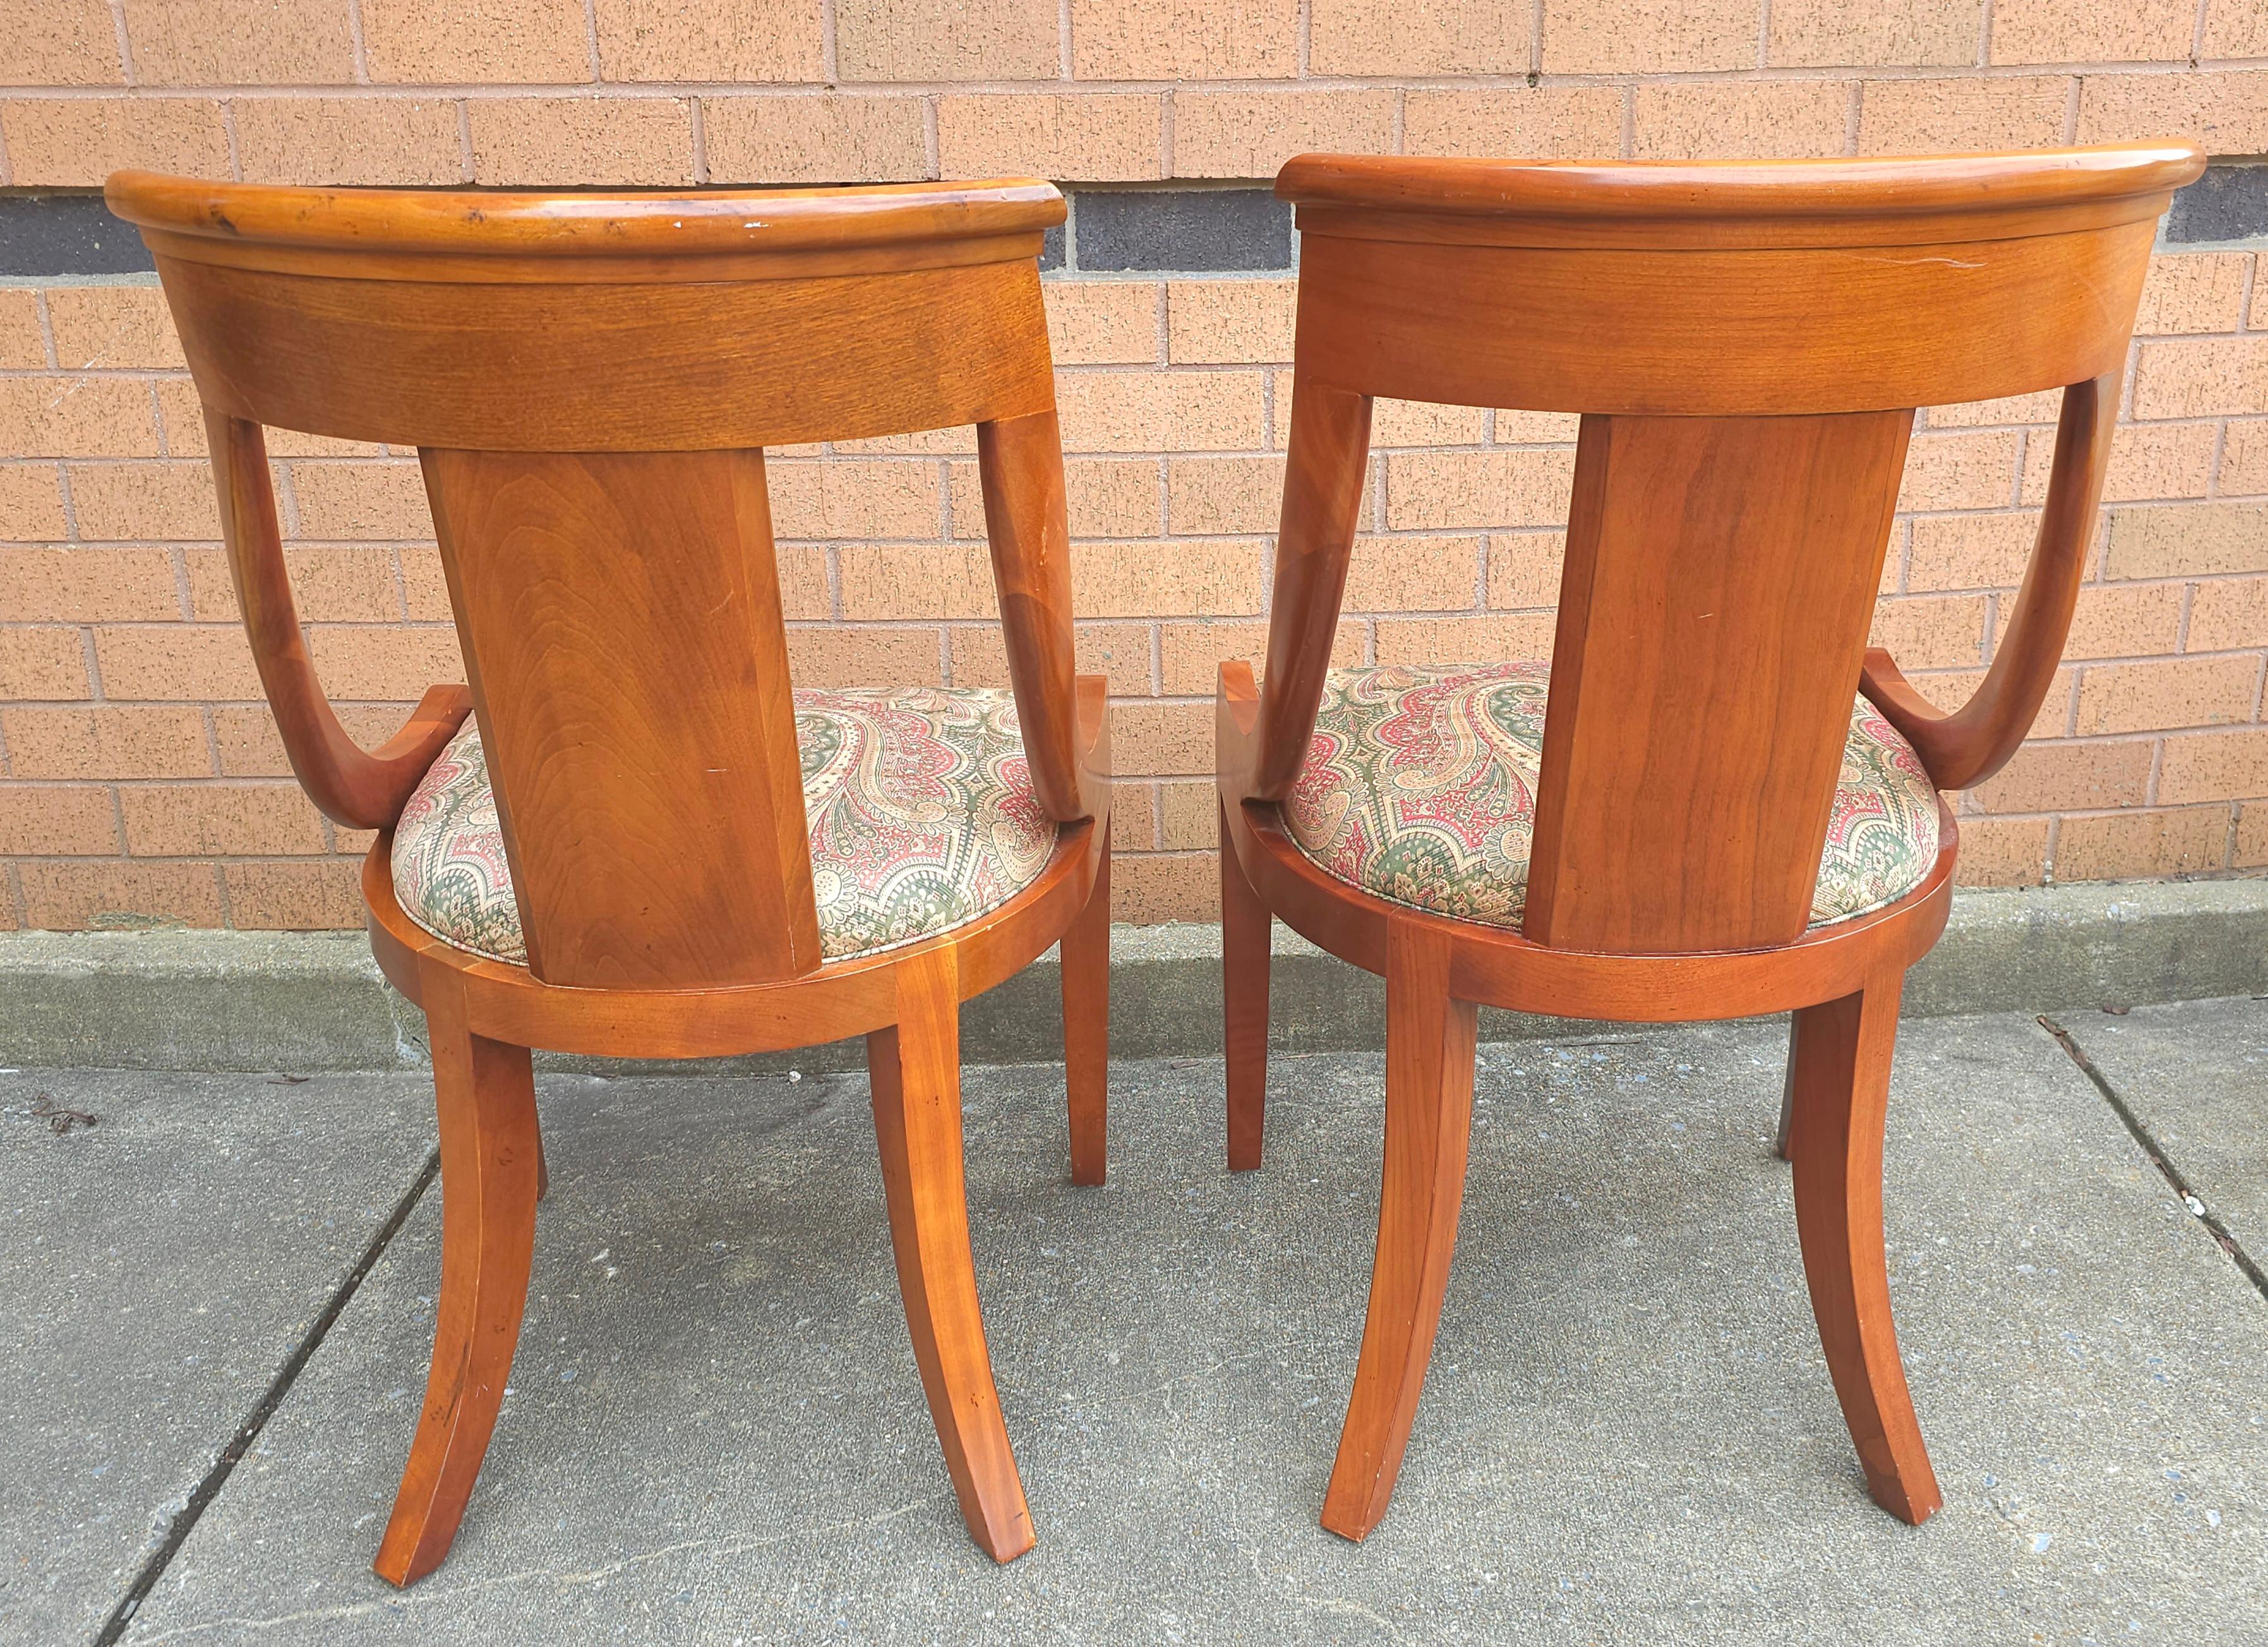 Paire de chaises de salle à manger en cerisier de style Klismos de Baker Furniture Beidermeir. Une combinaison fantastique des chaises traditionnelles Biedemeier et des chaises de style Klismos. Nous avons un autre ensemble de 6 chaises d'appoint et